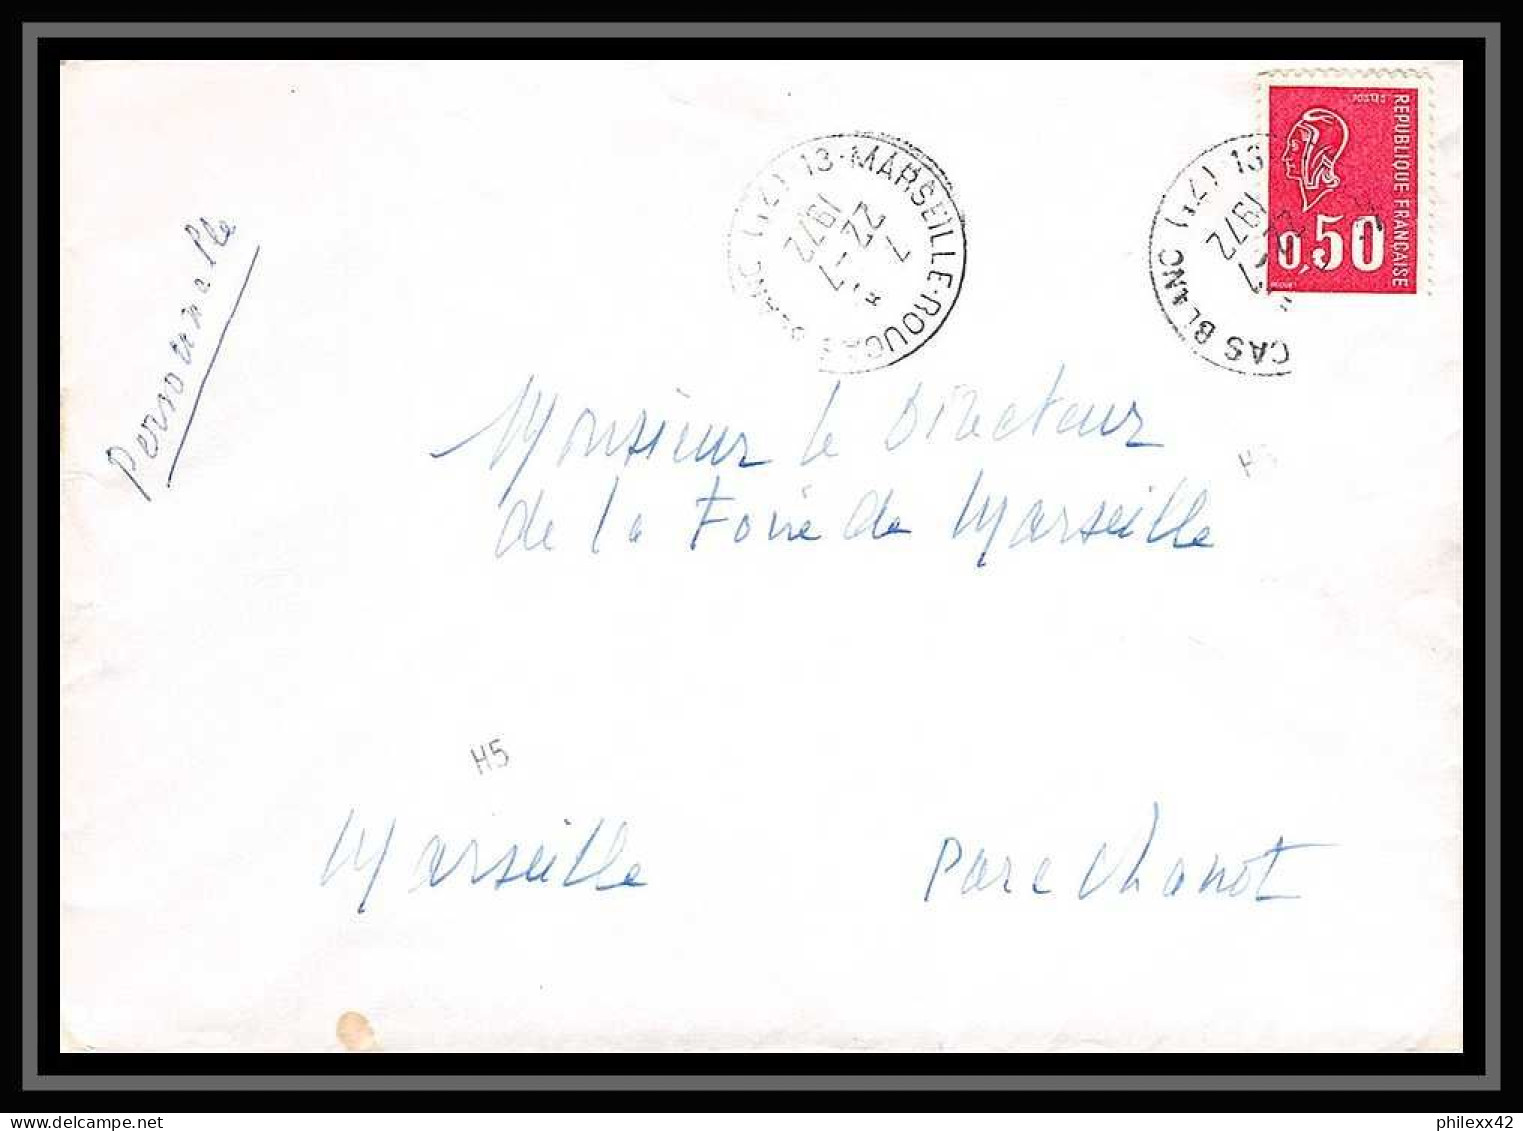 110709 lot de 12 Lettres dont recommandé Bouches du rhone Marseille roucas blanc 